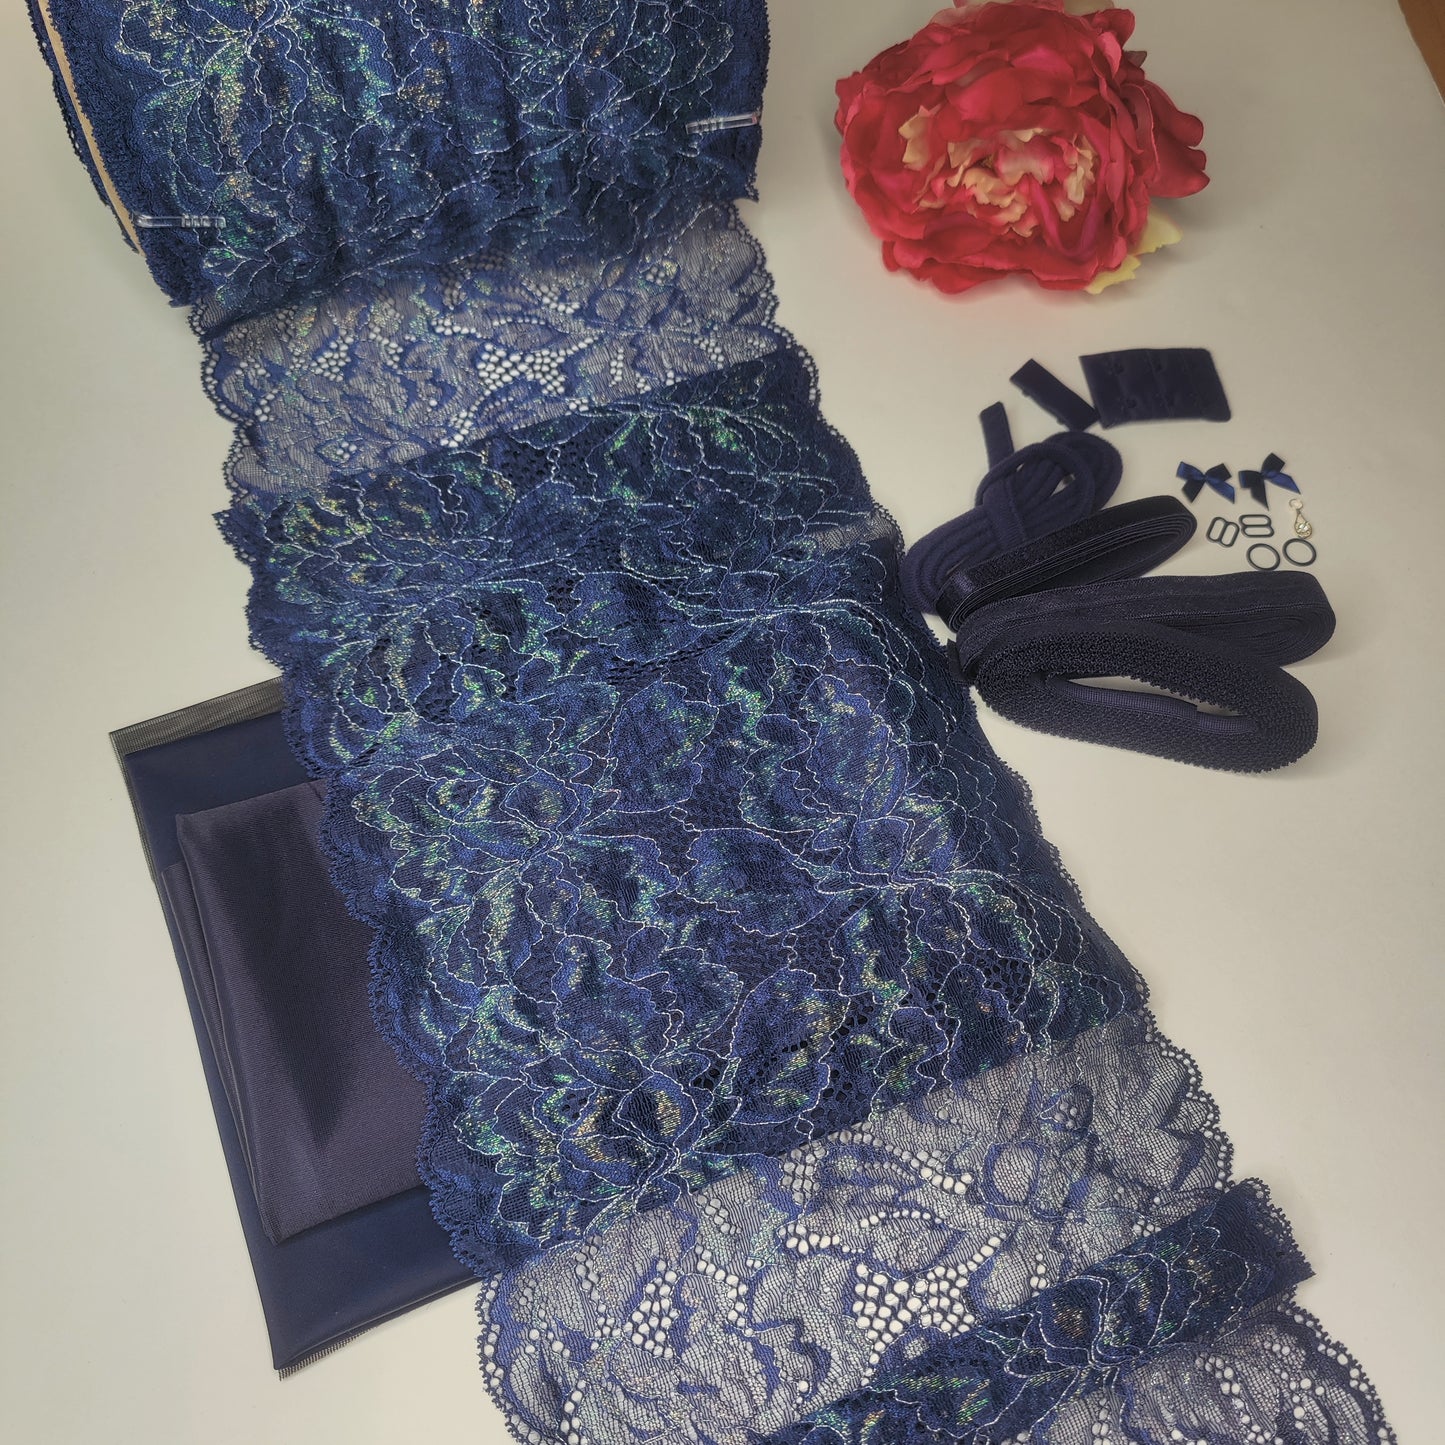 BH + Höschen diy Nähset / Kreativnähpaket mit Spitze und Mikrofaser, Midnight blue. Lingerie sewing kit with stretch lace IDnsx1